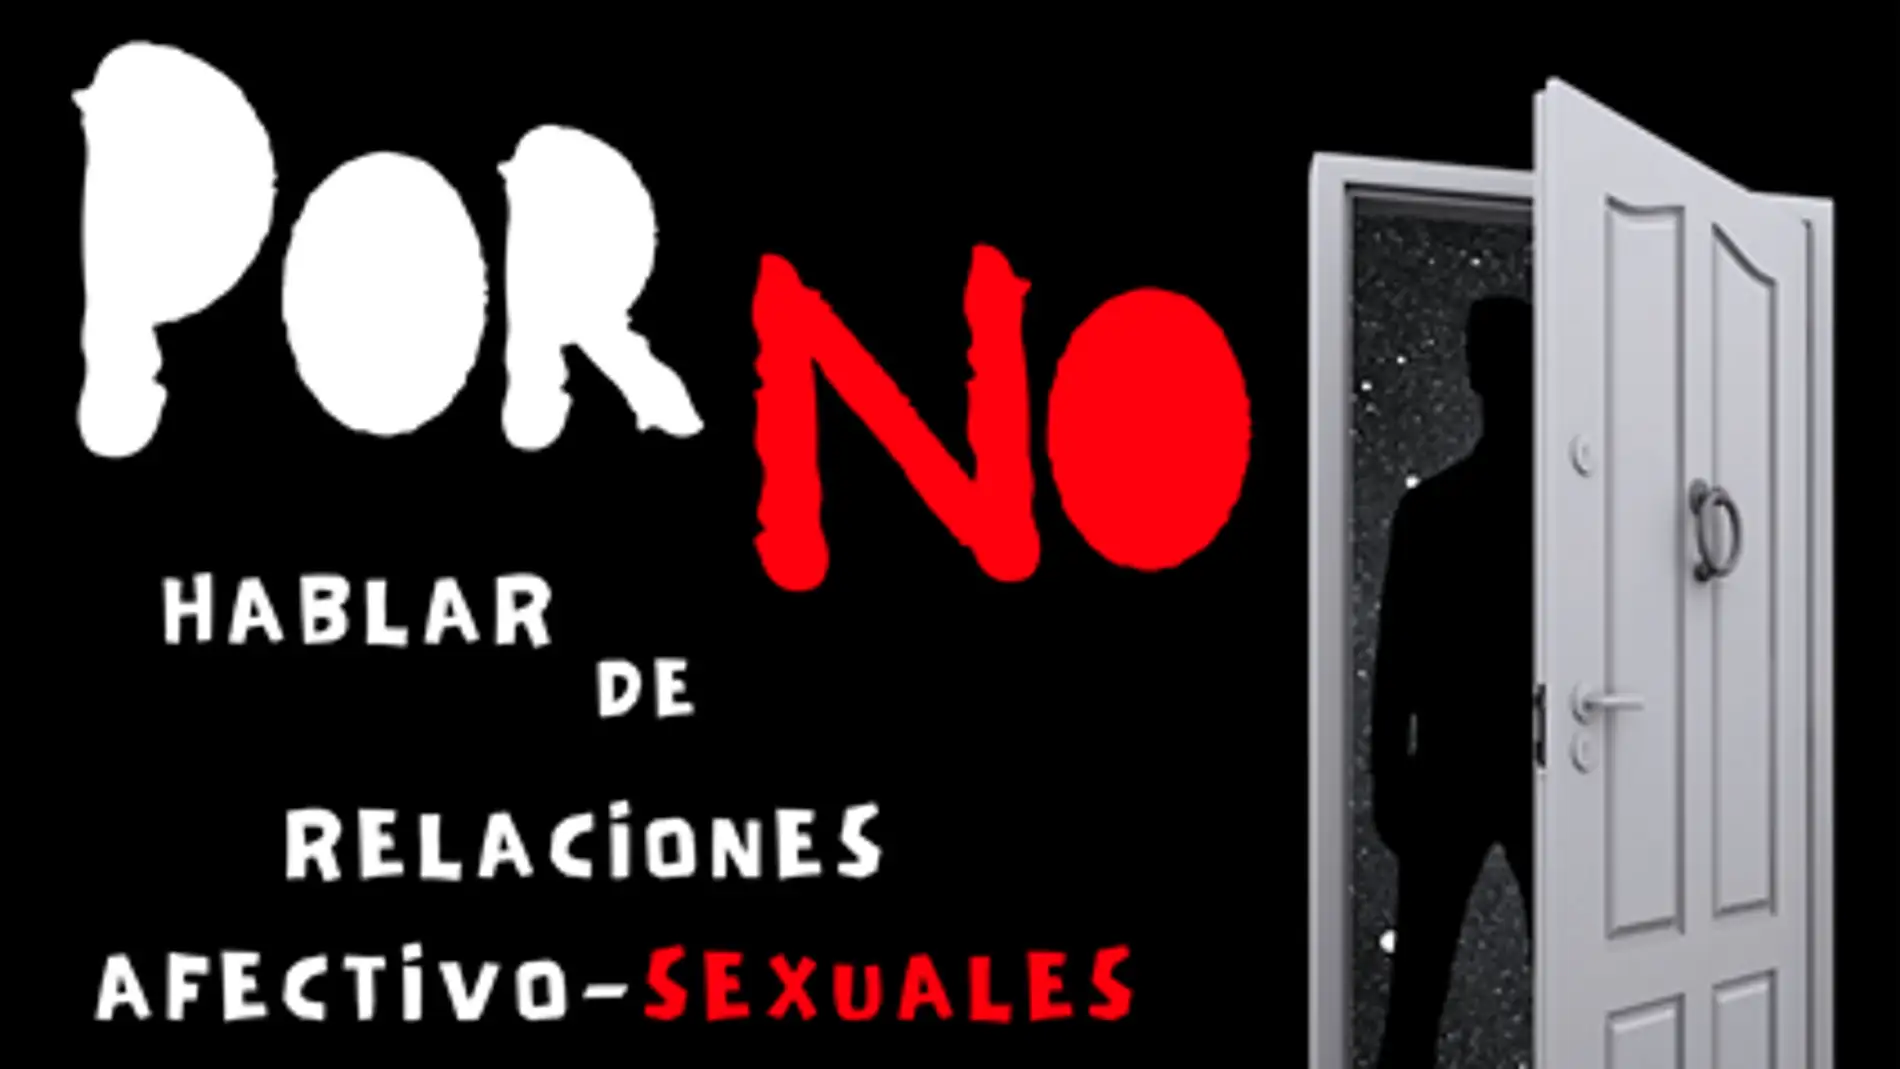 La campaña “Por... No” para sensibilizar frente al consumo de pornografía en adolescentes